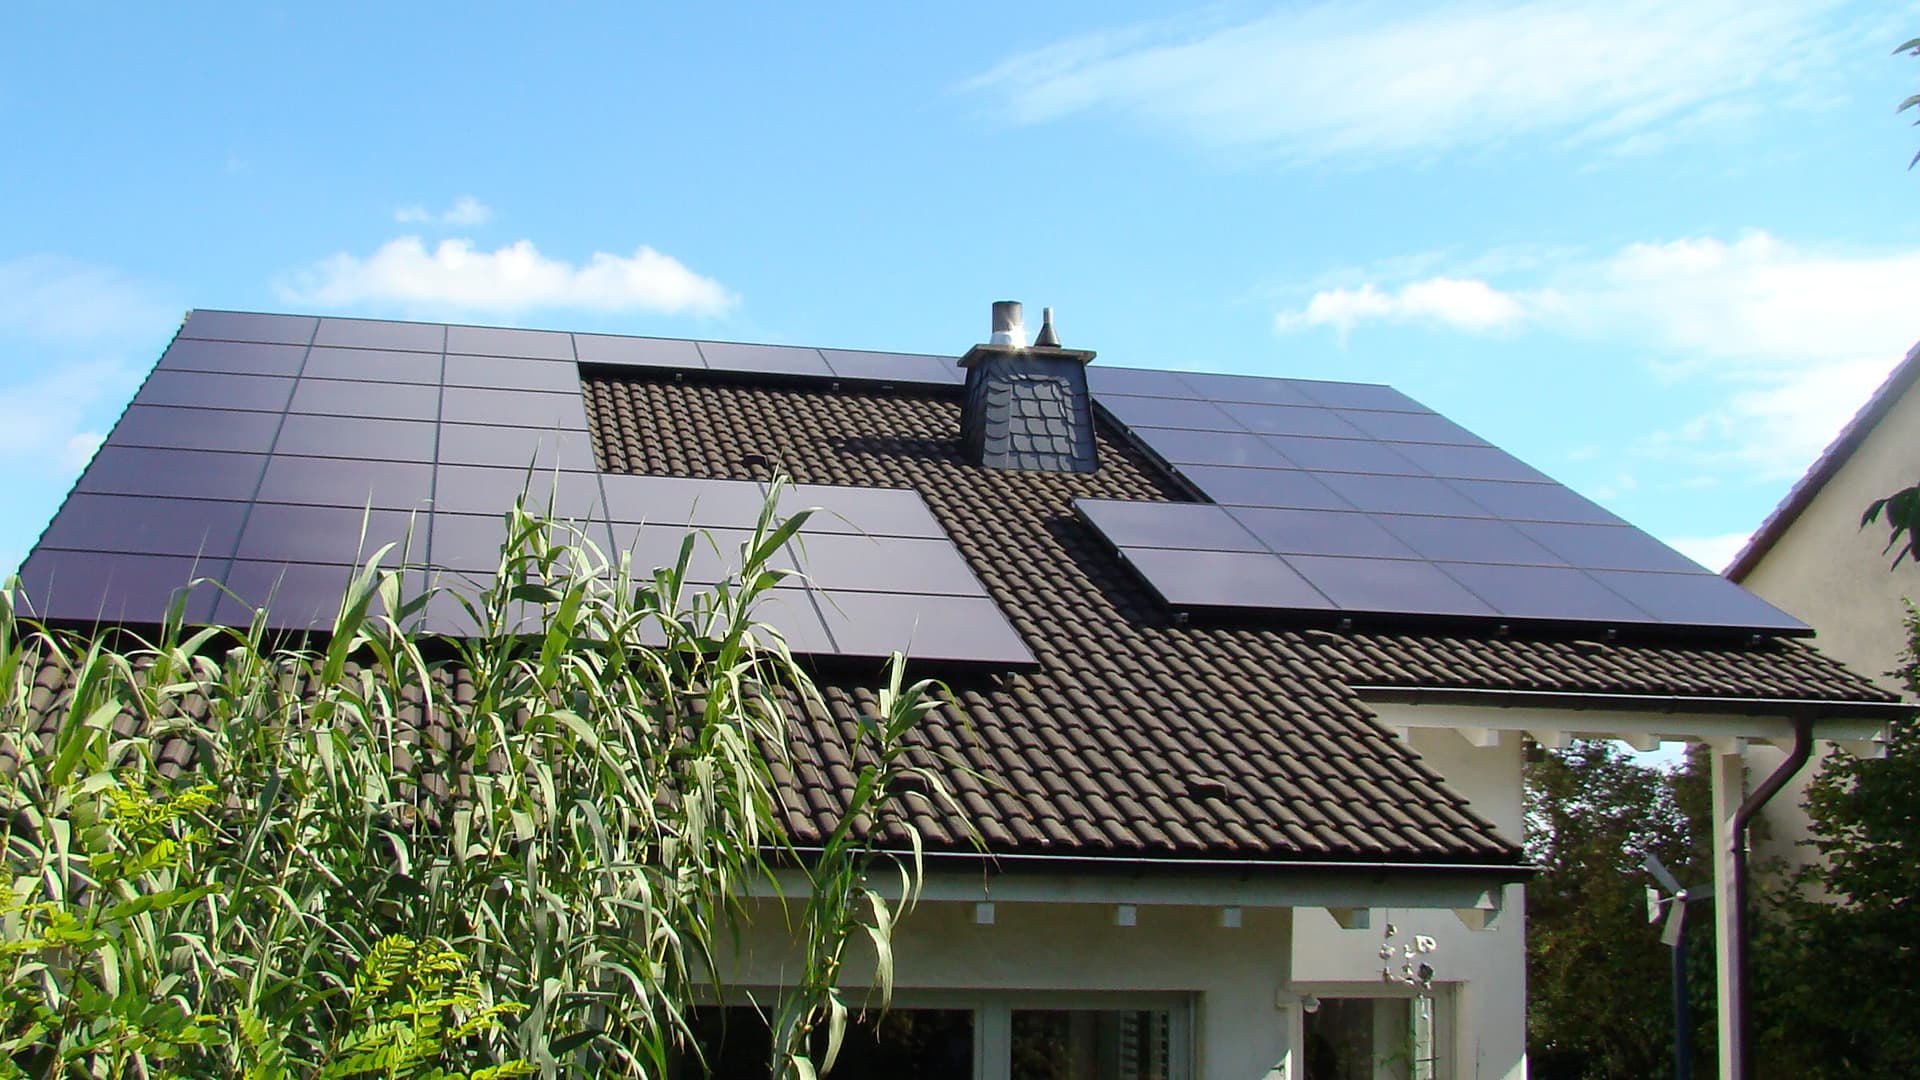 Impianto fotovoltaico - cosa devo tenere a mente? 2